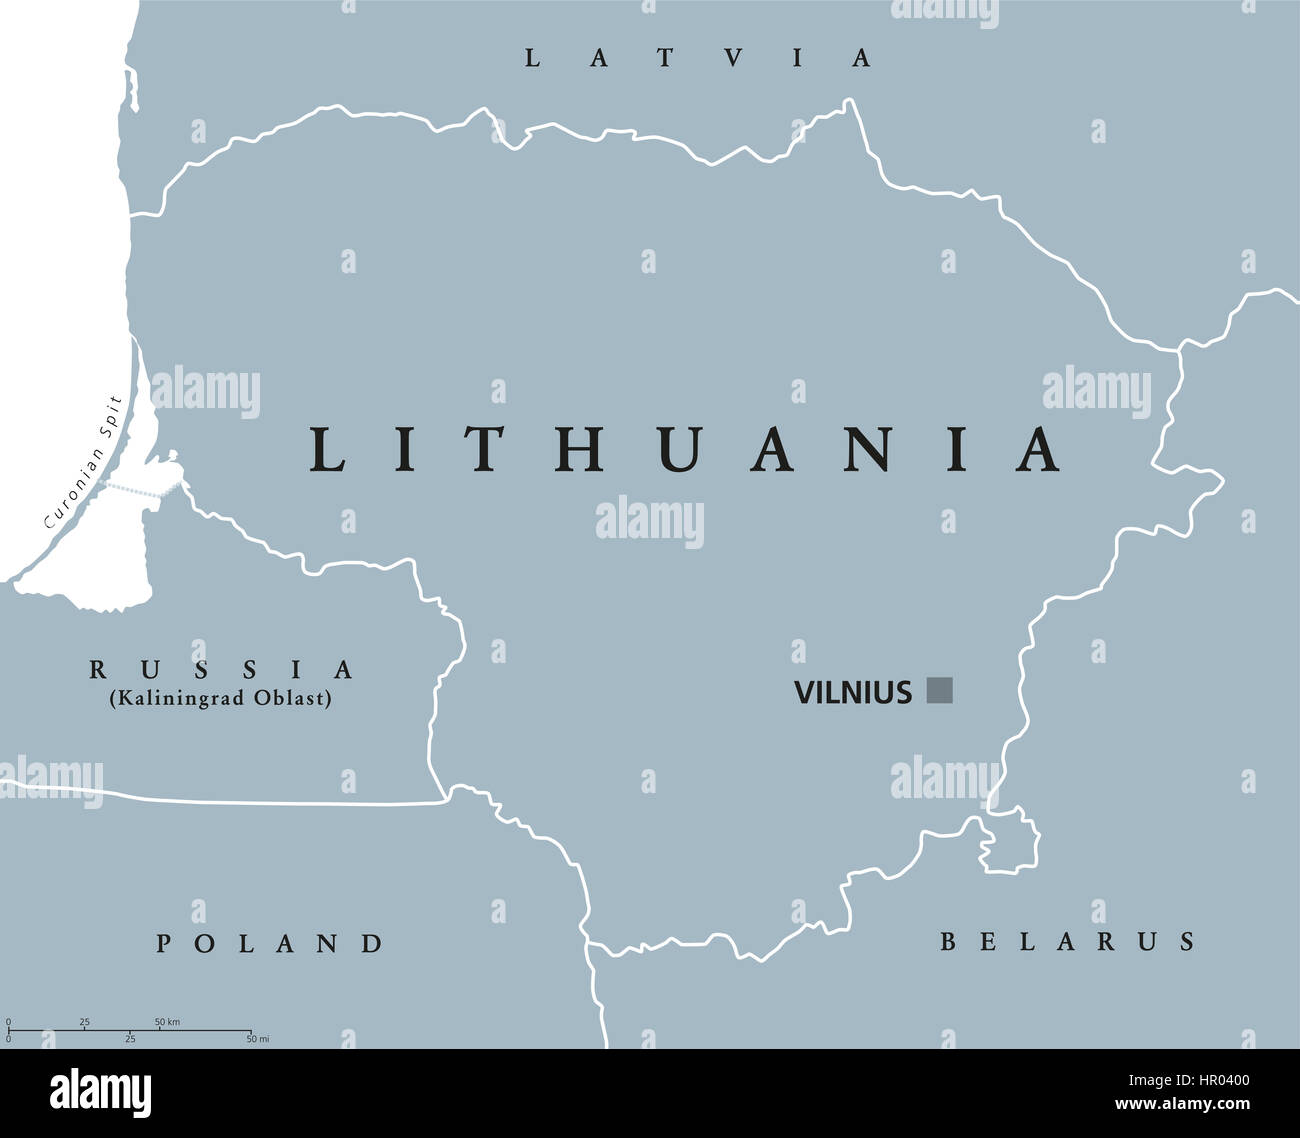 Carte politique de la Lituanie, Vilnius, la capitale avec les frontières nationales et les pays voisins. Au nord de l'Europe, l'un des trois états baltes. Banque D'Images